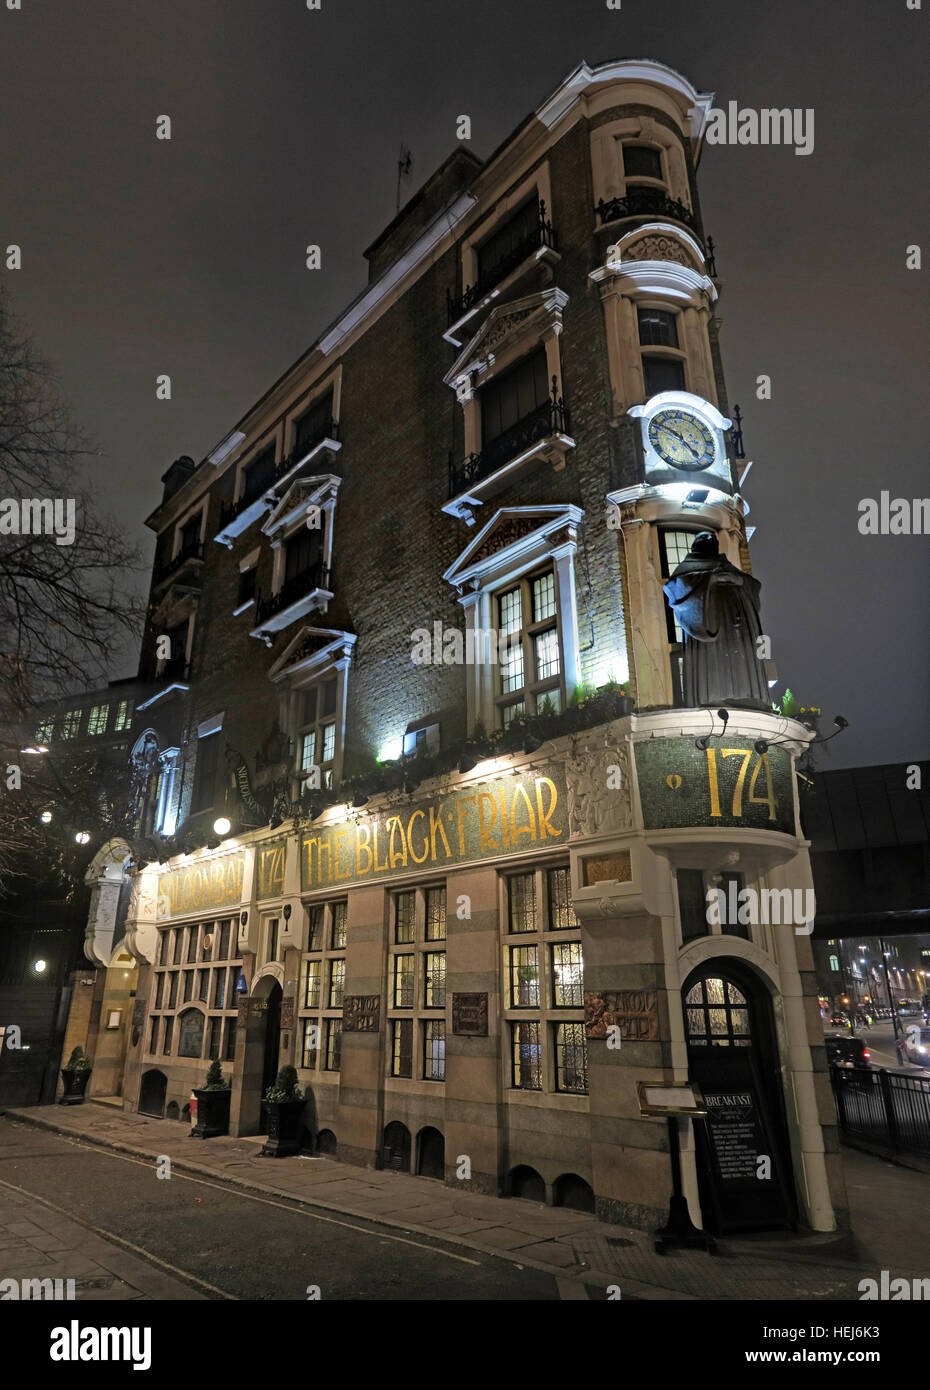 Le frère noir, Blackfriars, London, England, UK la nuit,pano Banque D'Images